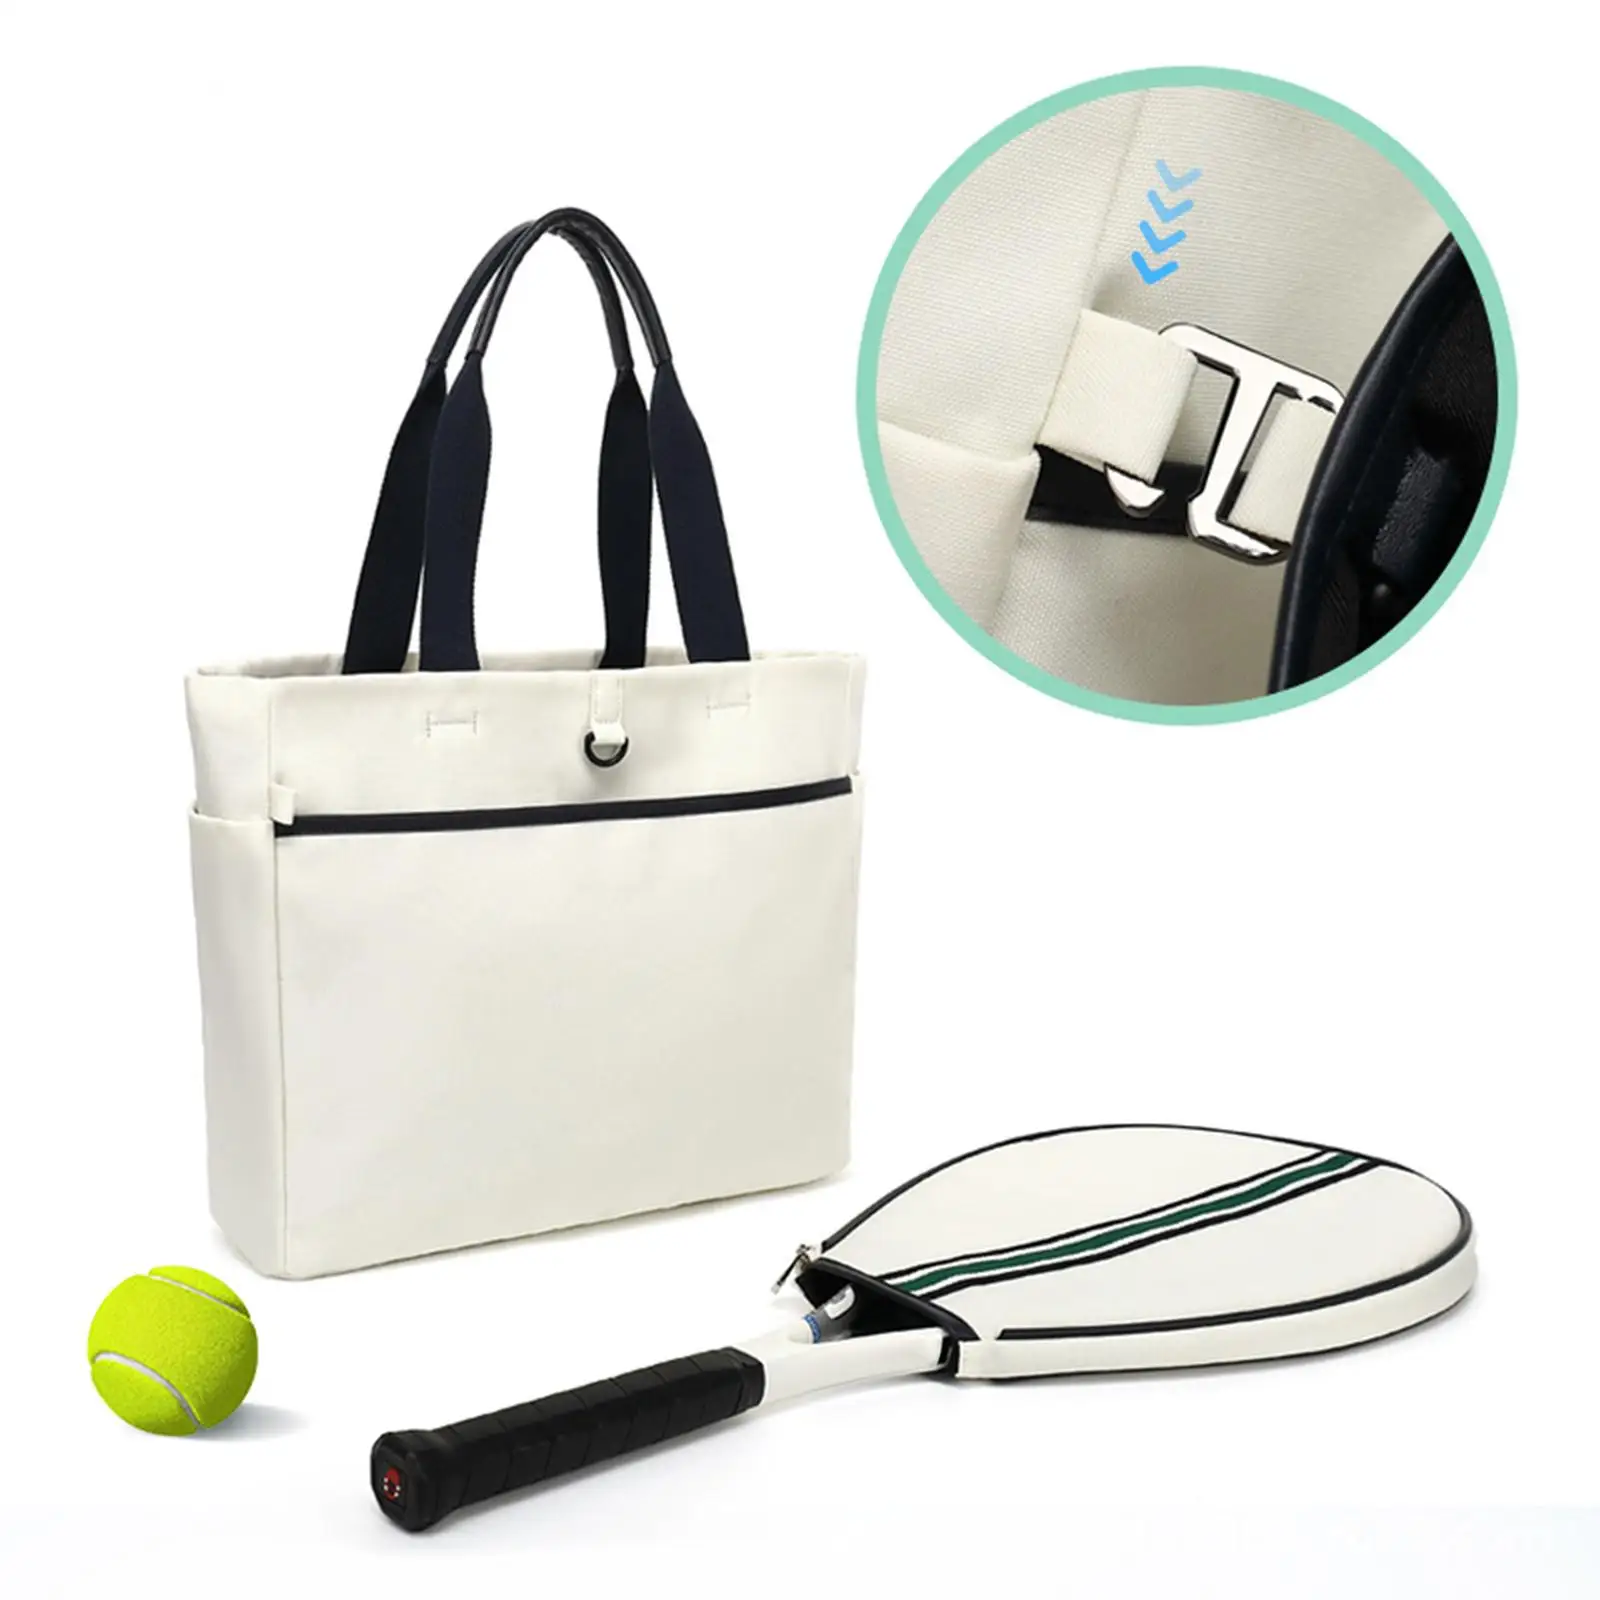 Tennis Tote Bag Rucksack with Detachable Shoulder Strap Detachable Racquet Cover Multipurpose for Women Men Tennis Racquet Bag